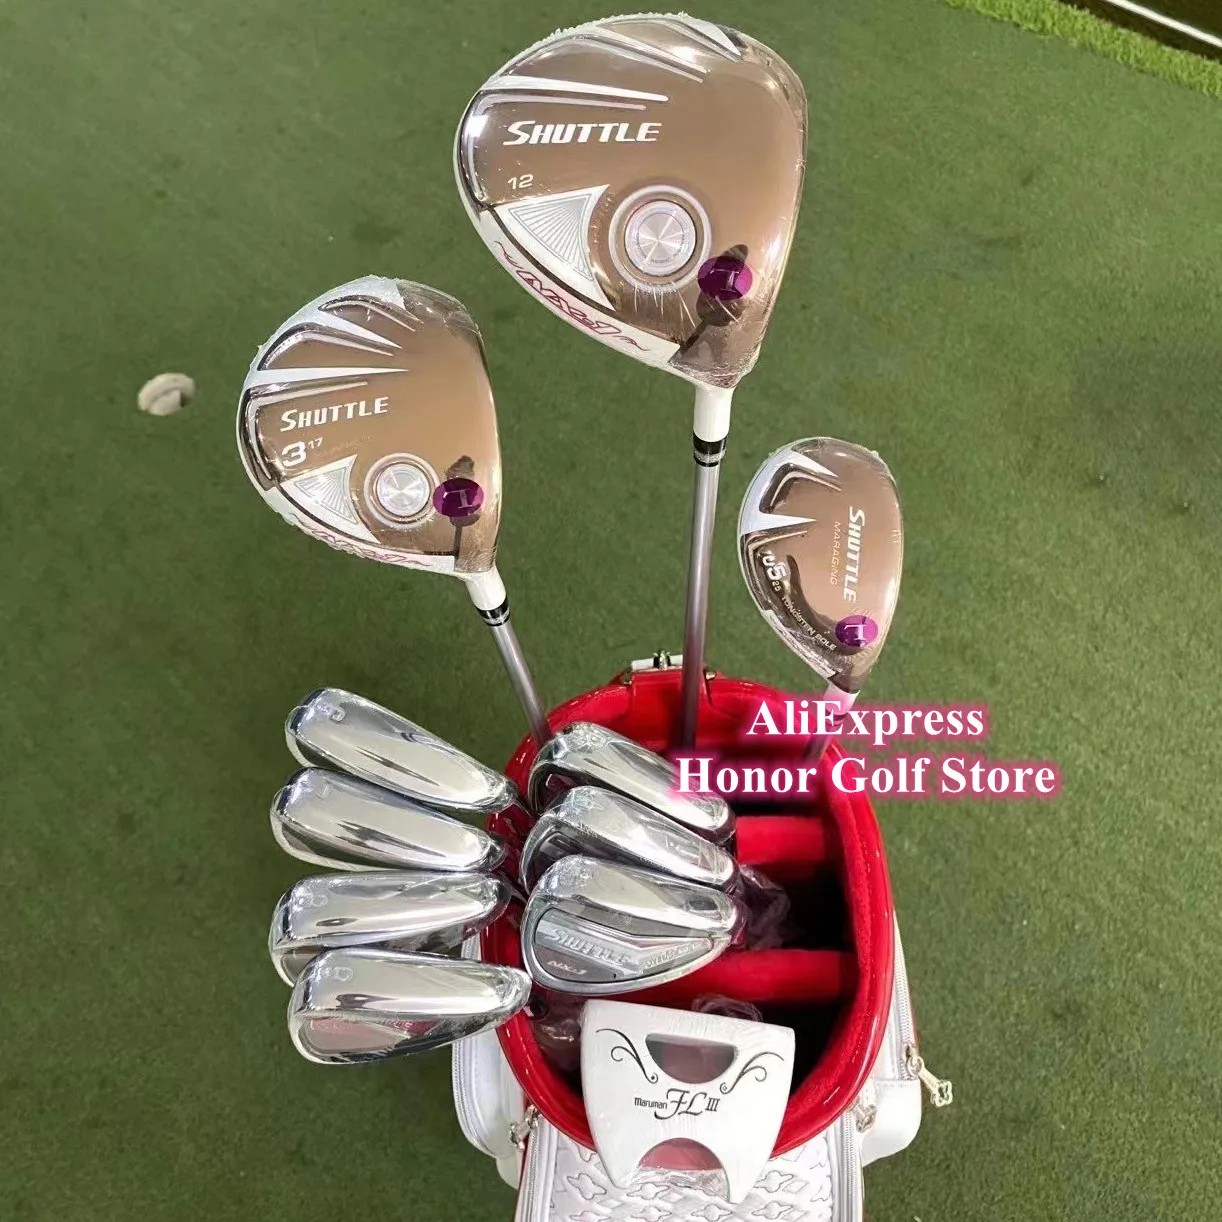 

Hot Sale Maruman SHUTTLE Golf Set Women Golf Clubs Driver + 3w + U5 + 6-9PAS Irons + Putter L-Flex Graphite Shaft With HeadCover